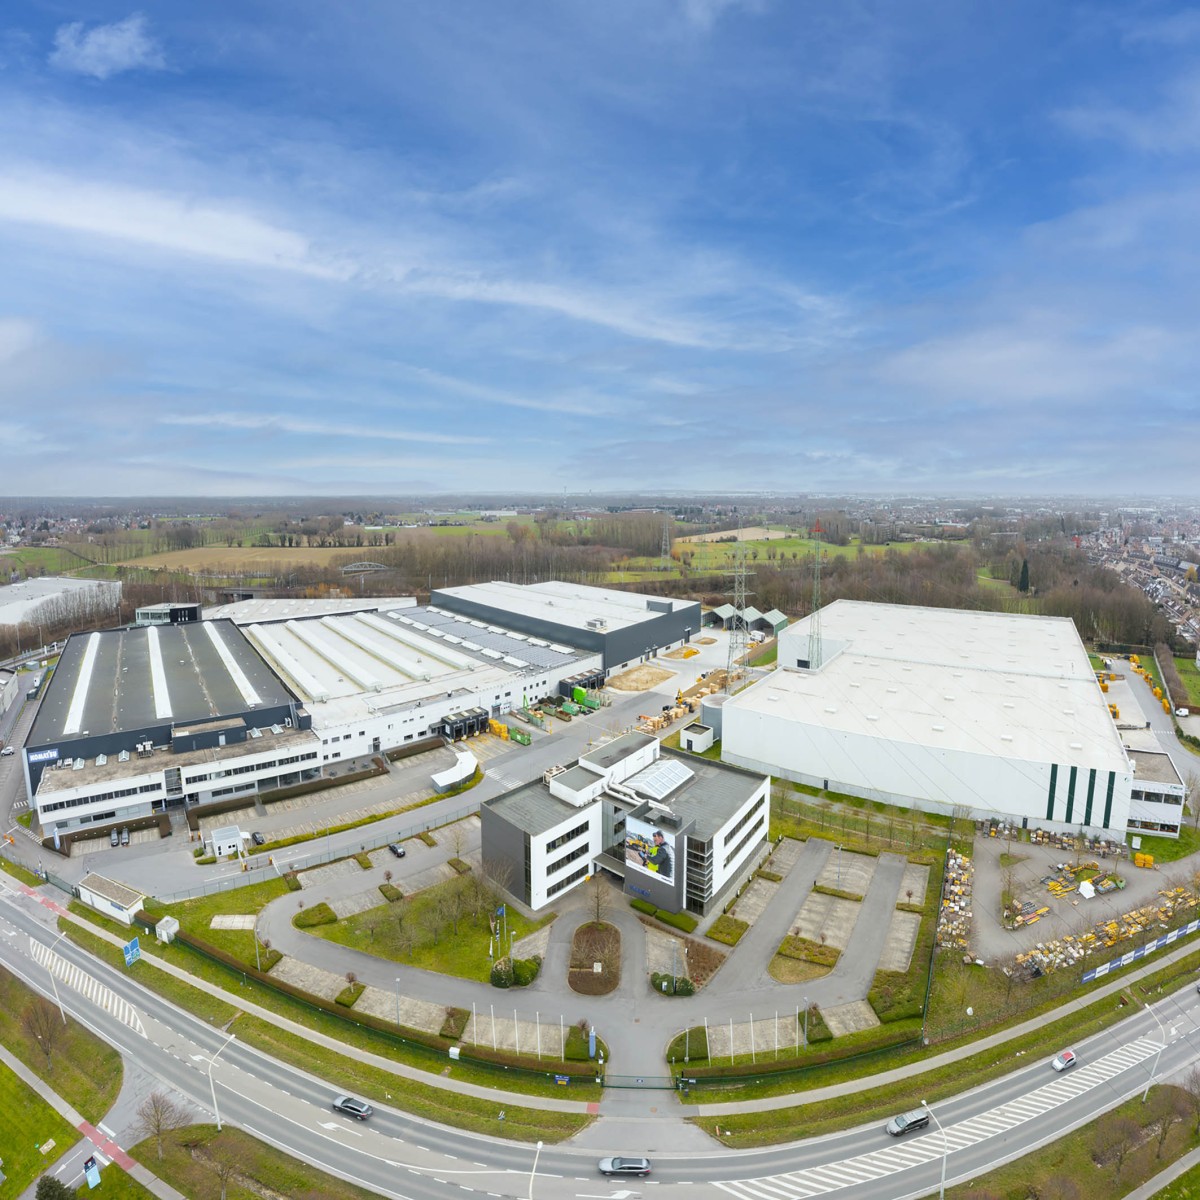 Komatsu Europe espande il suo centro di logistica in Belgio